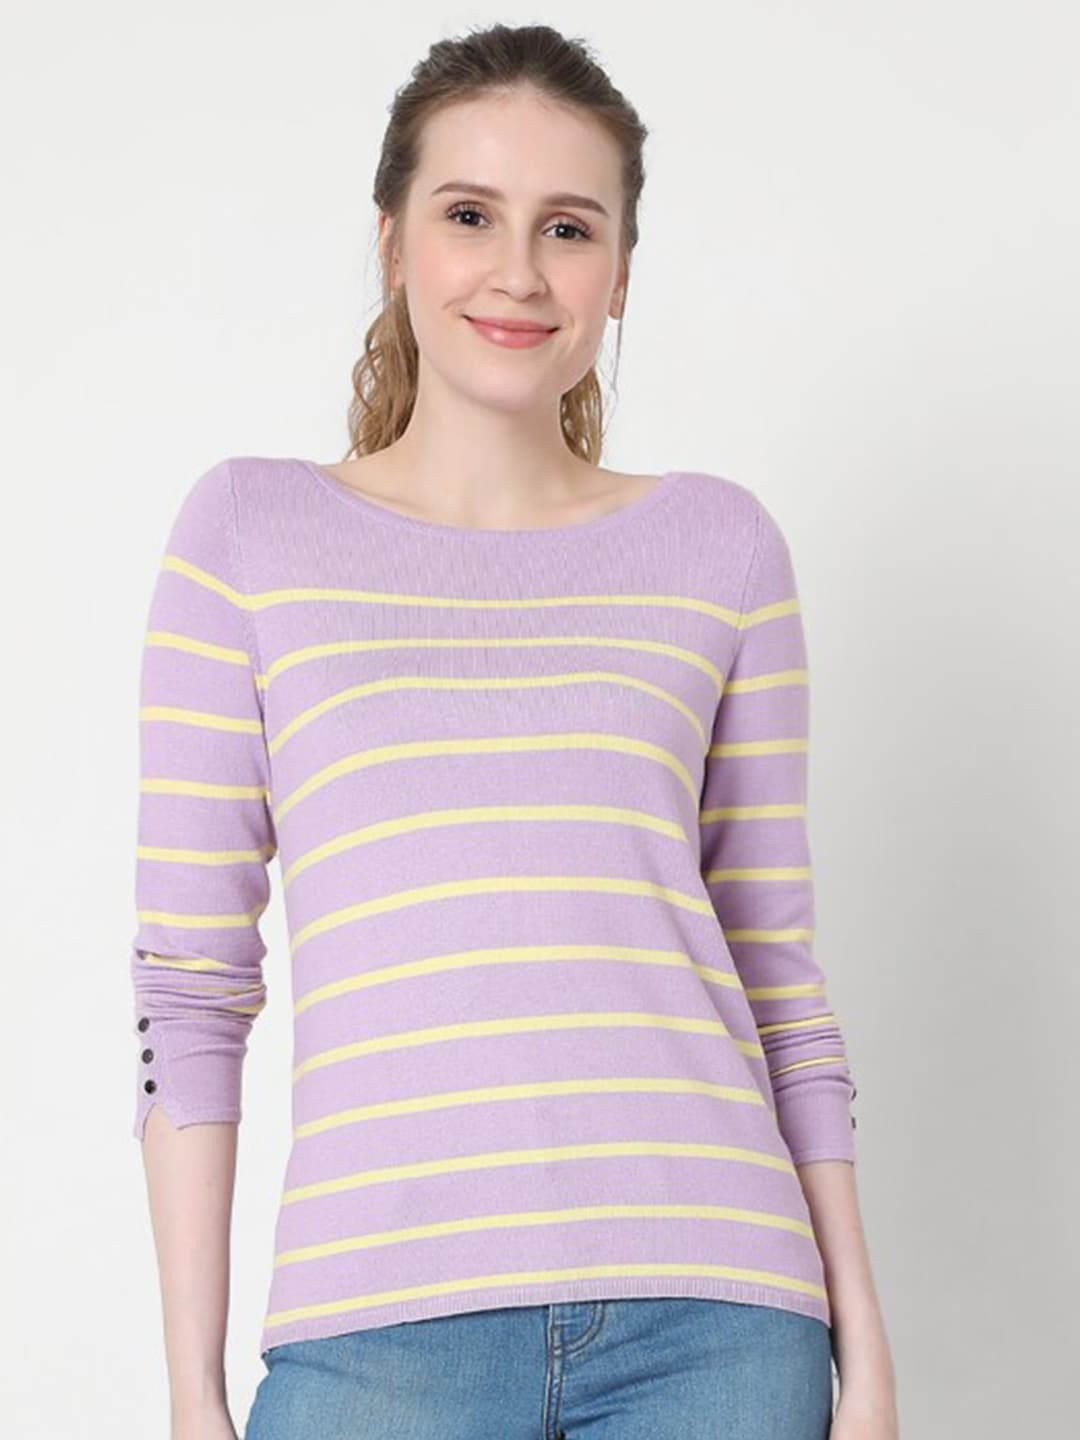 Vero Moda Women Purple & Yellow Striped Pullover Price in India